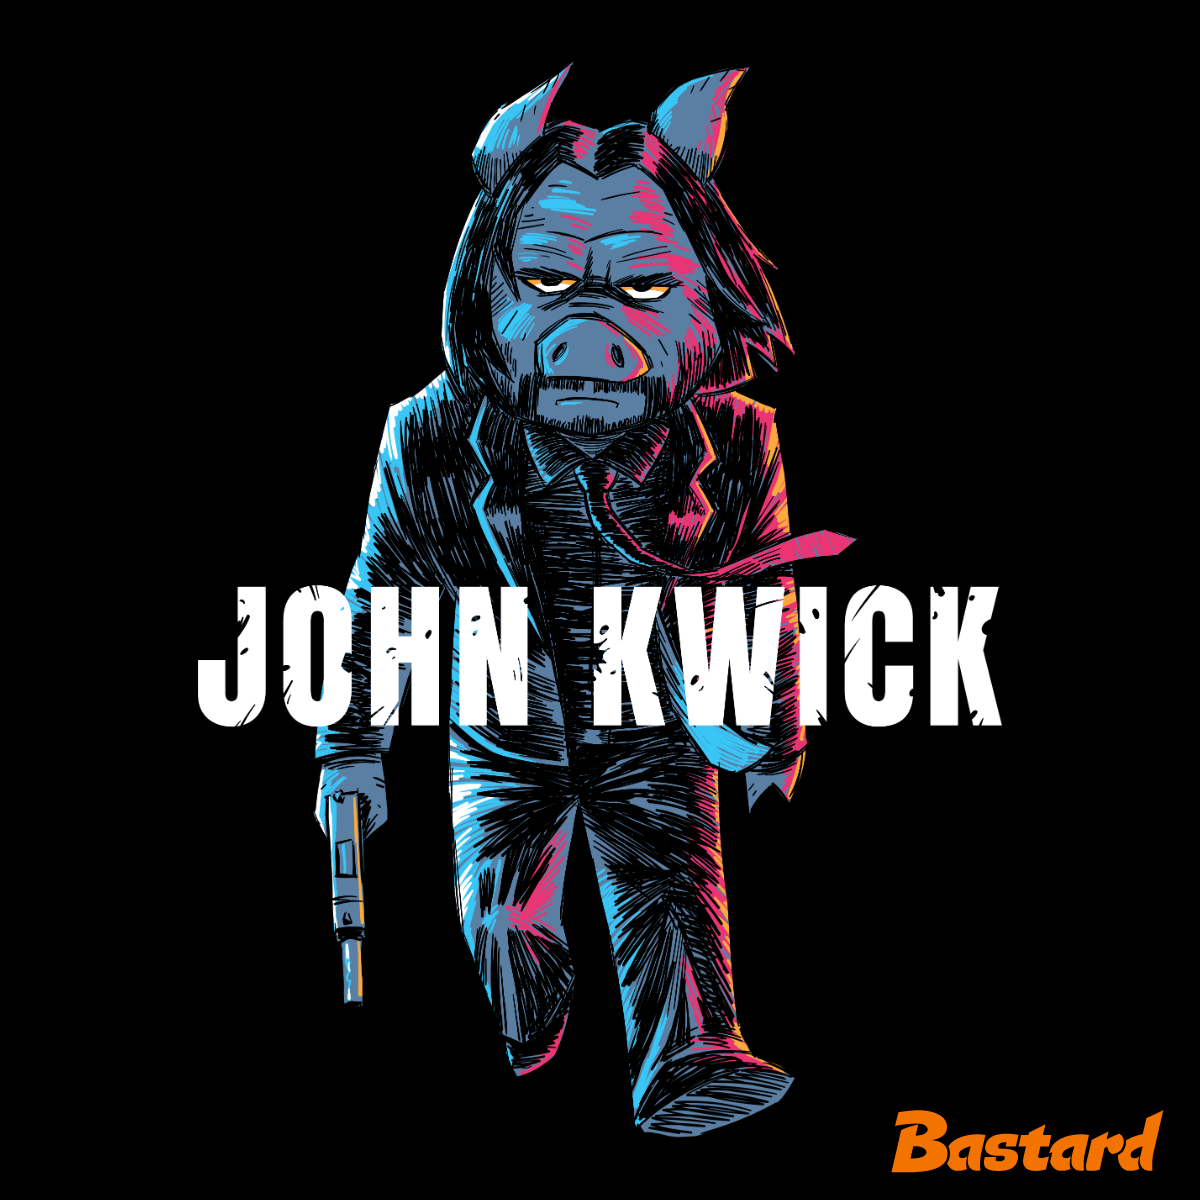 John Kwick